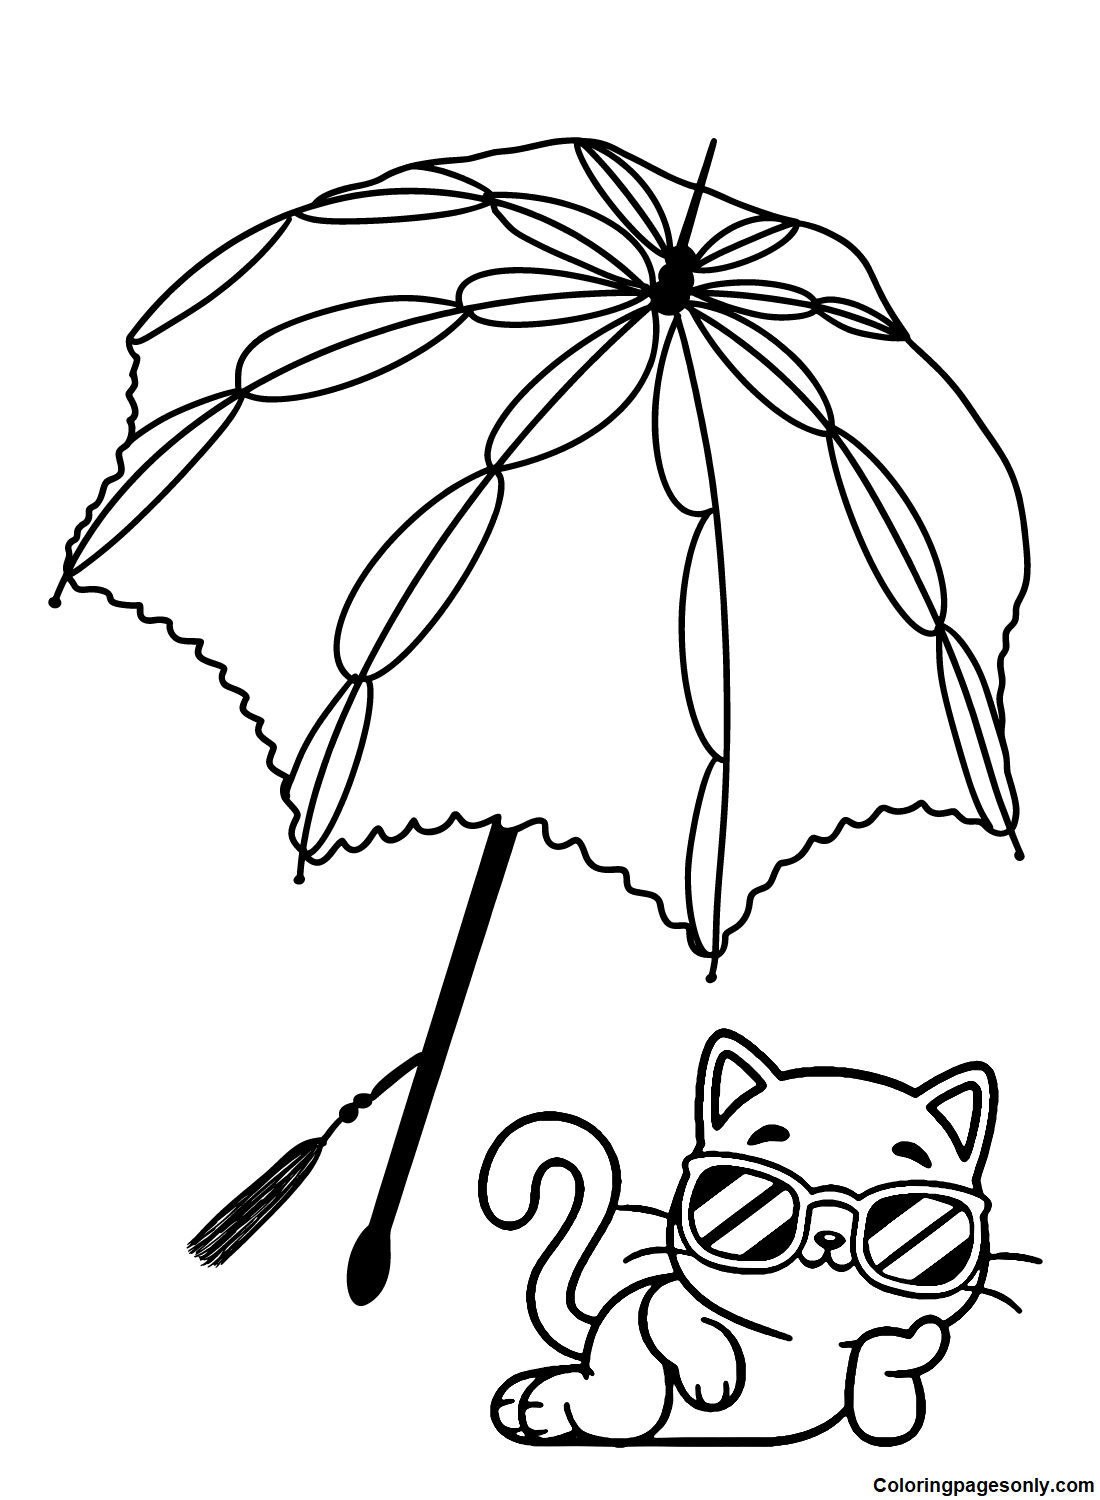 Guarda-chuva com Gato from Umbrella